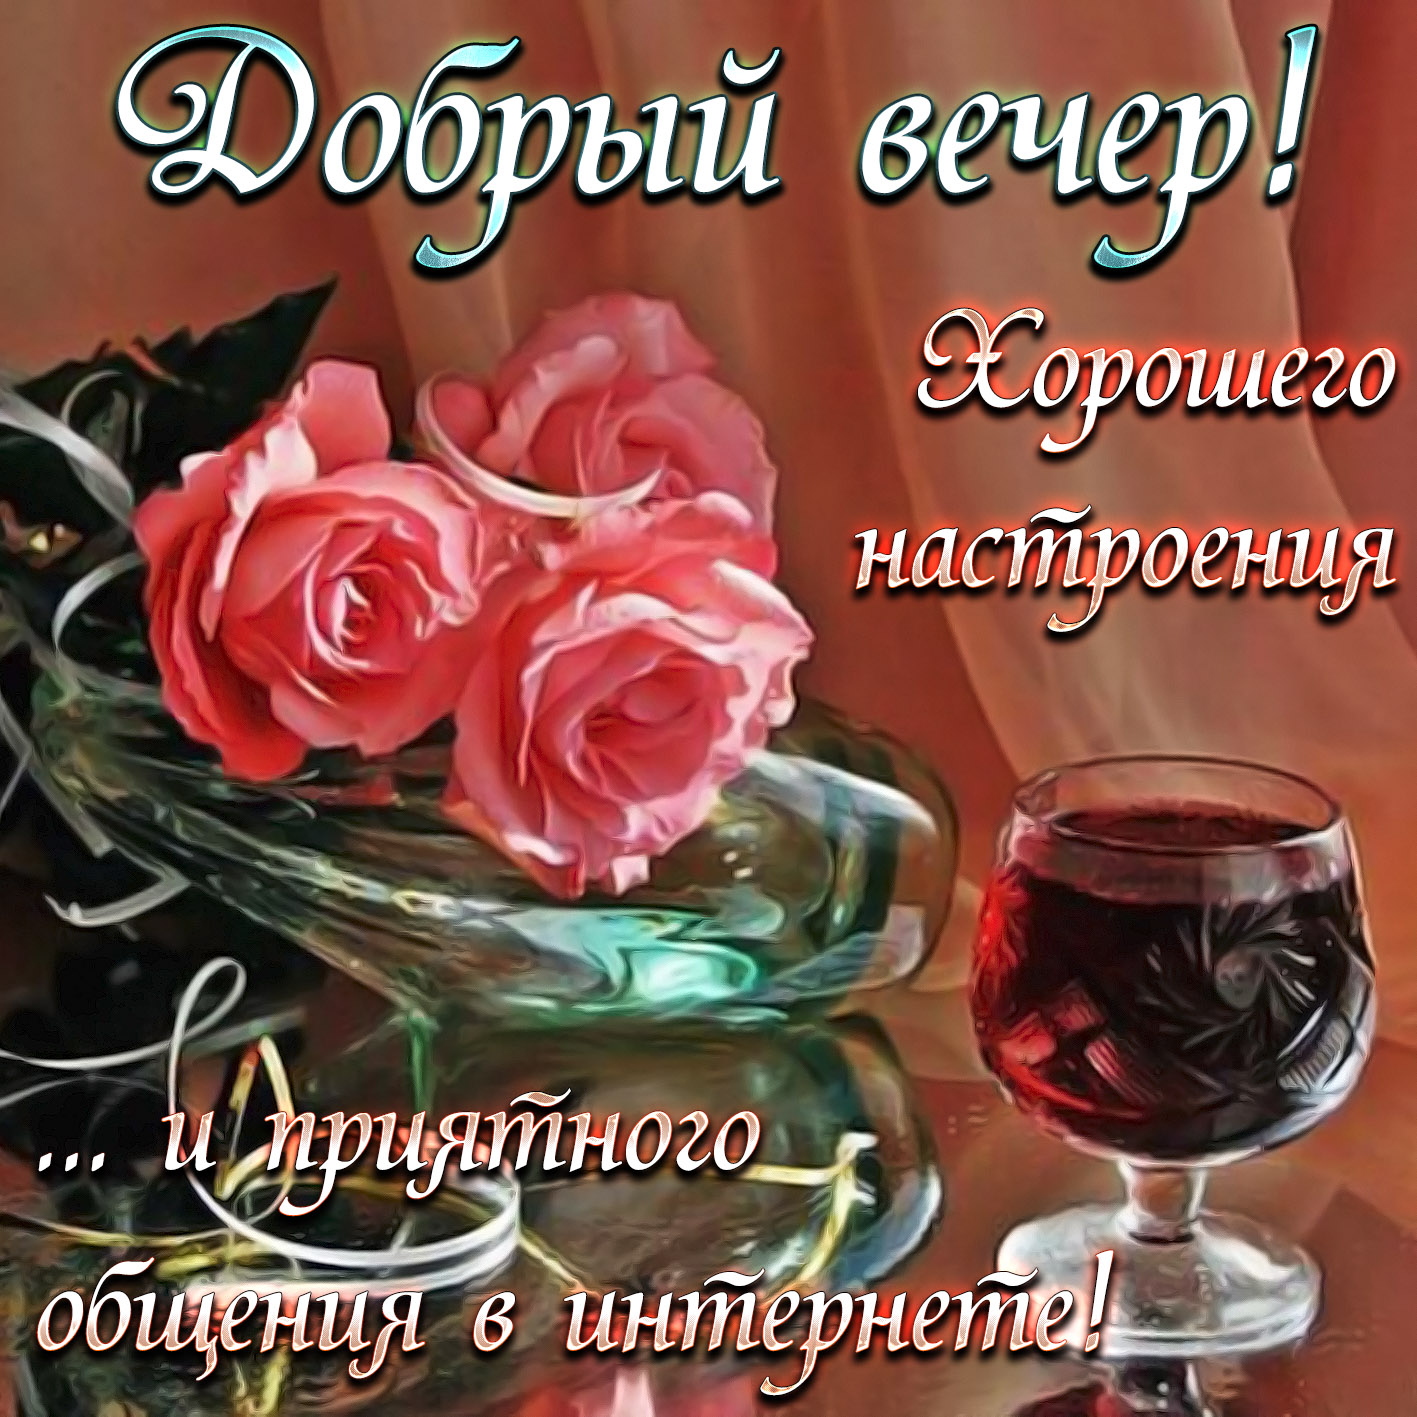 Картинки добрый вечер пожелания (70 желаний)! » 72tv.ru - картинки и открытки "красивые поздравления"!